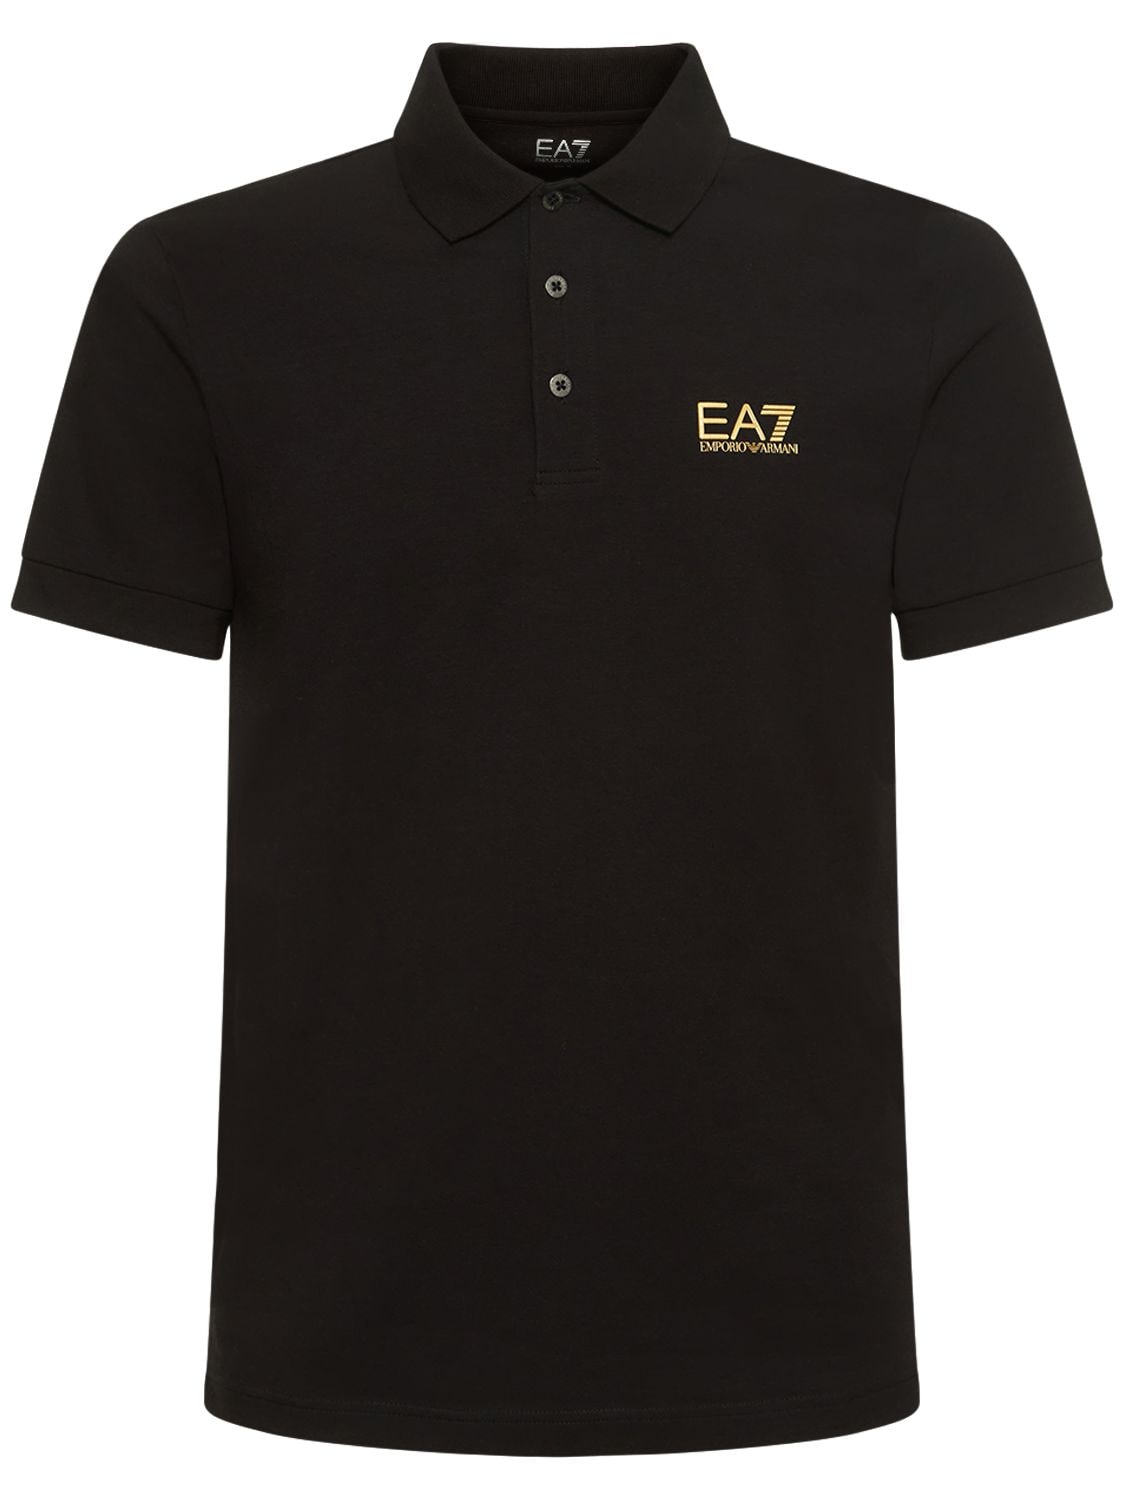 Ea7 Core Identity Cotton Jersey Polo In Black,gold